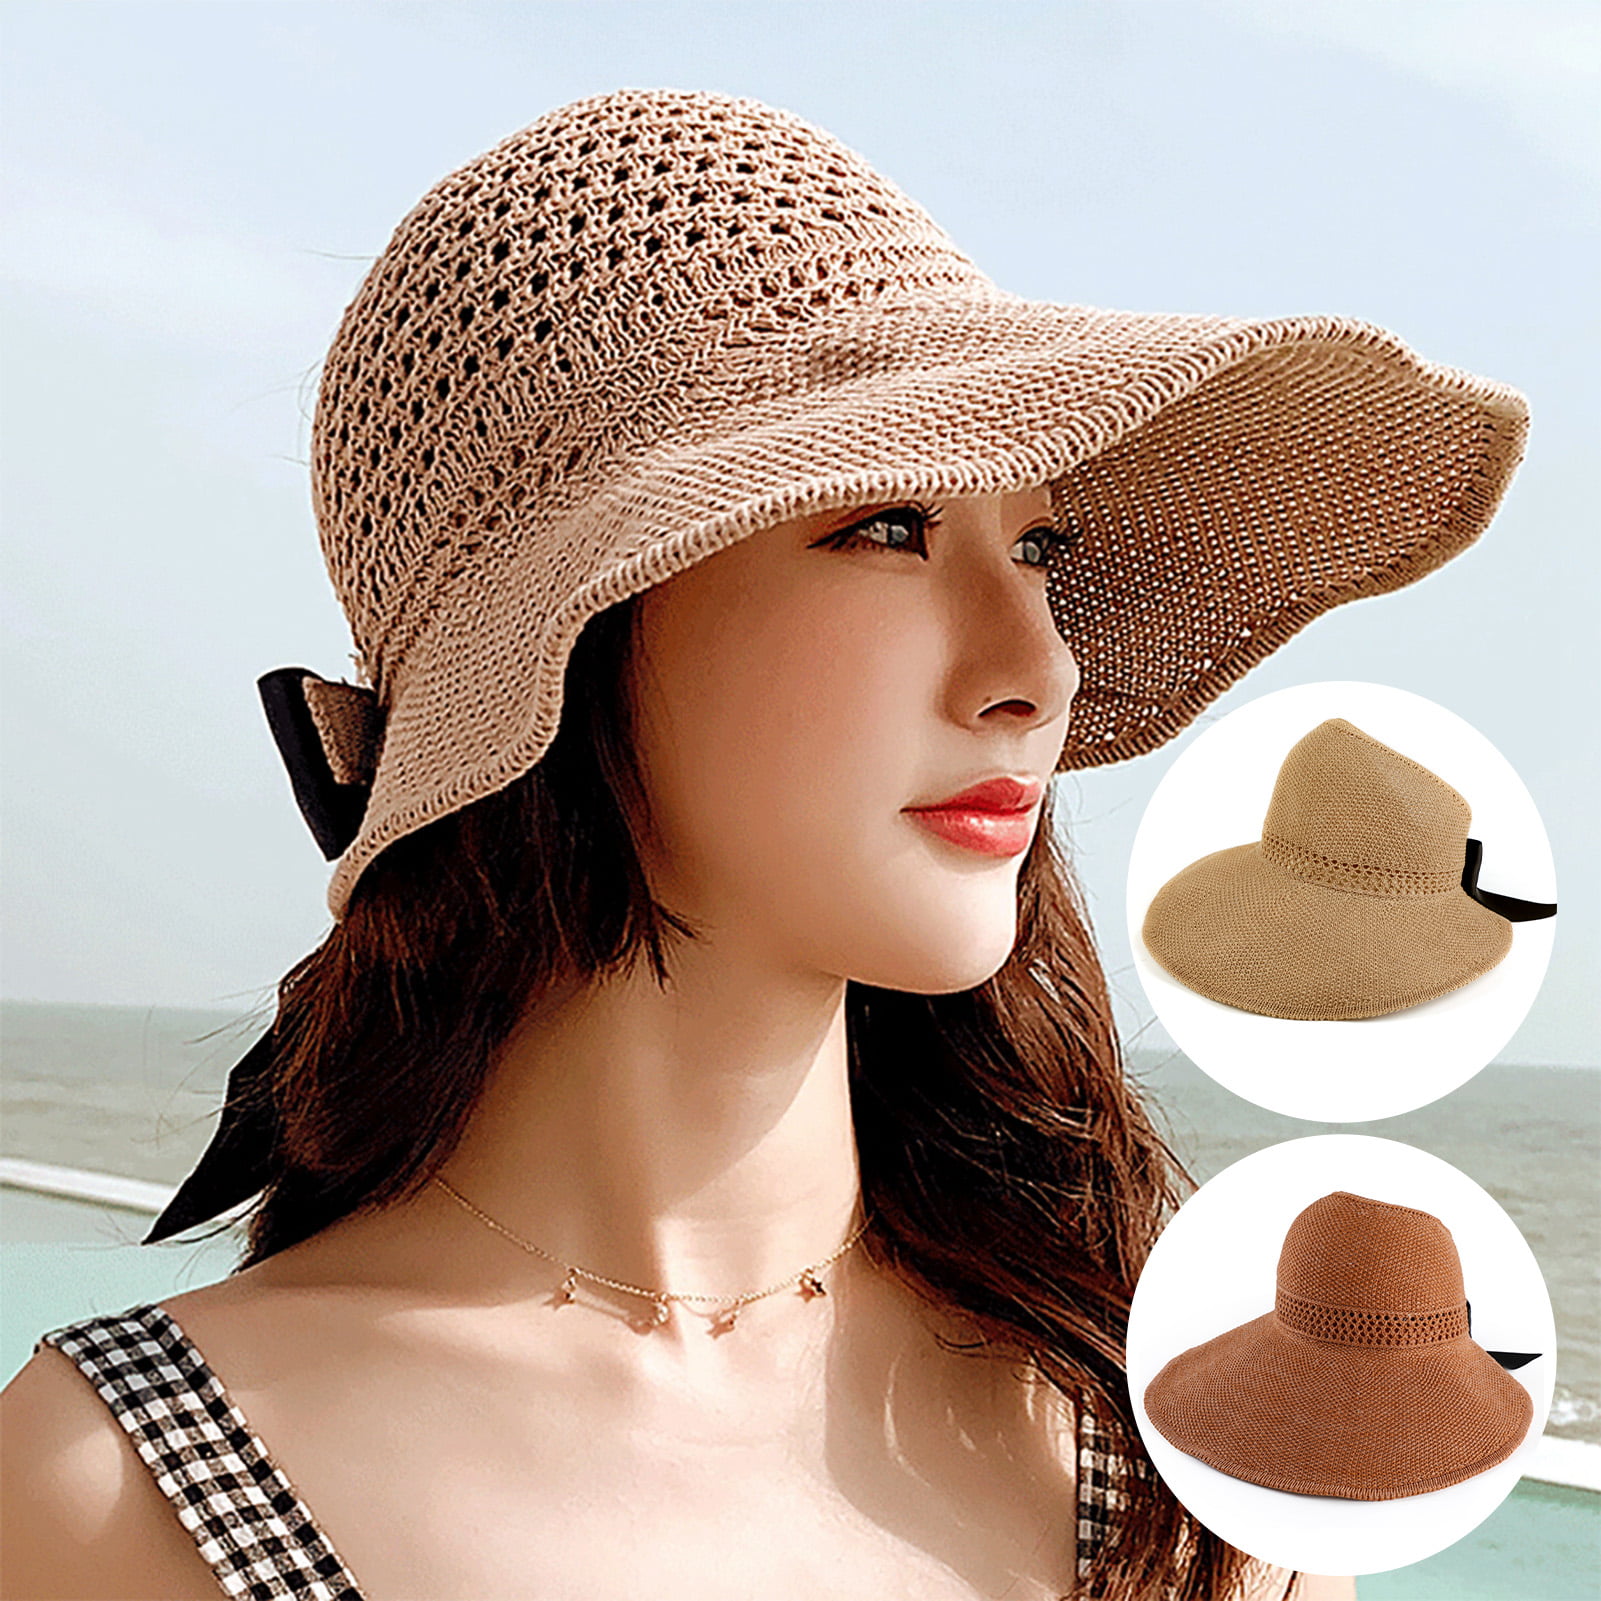 Round Womens Summer Hat Hand Woven Wide Brim Straw Hats Fashion Female Sun Caps Beach Hat 